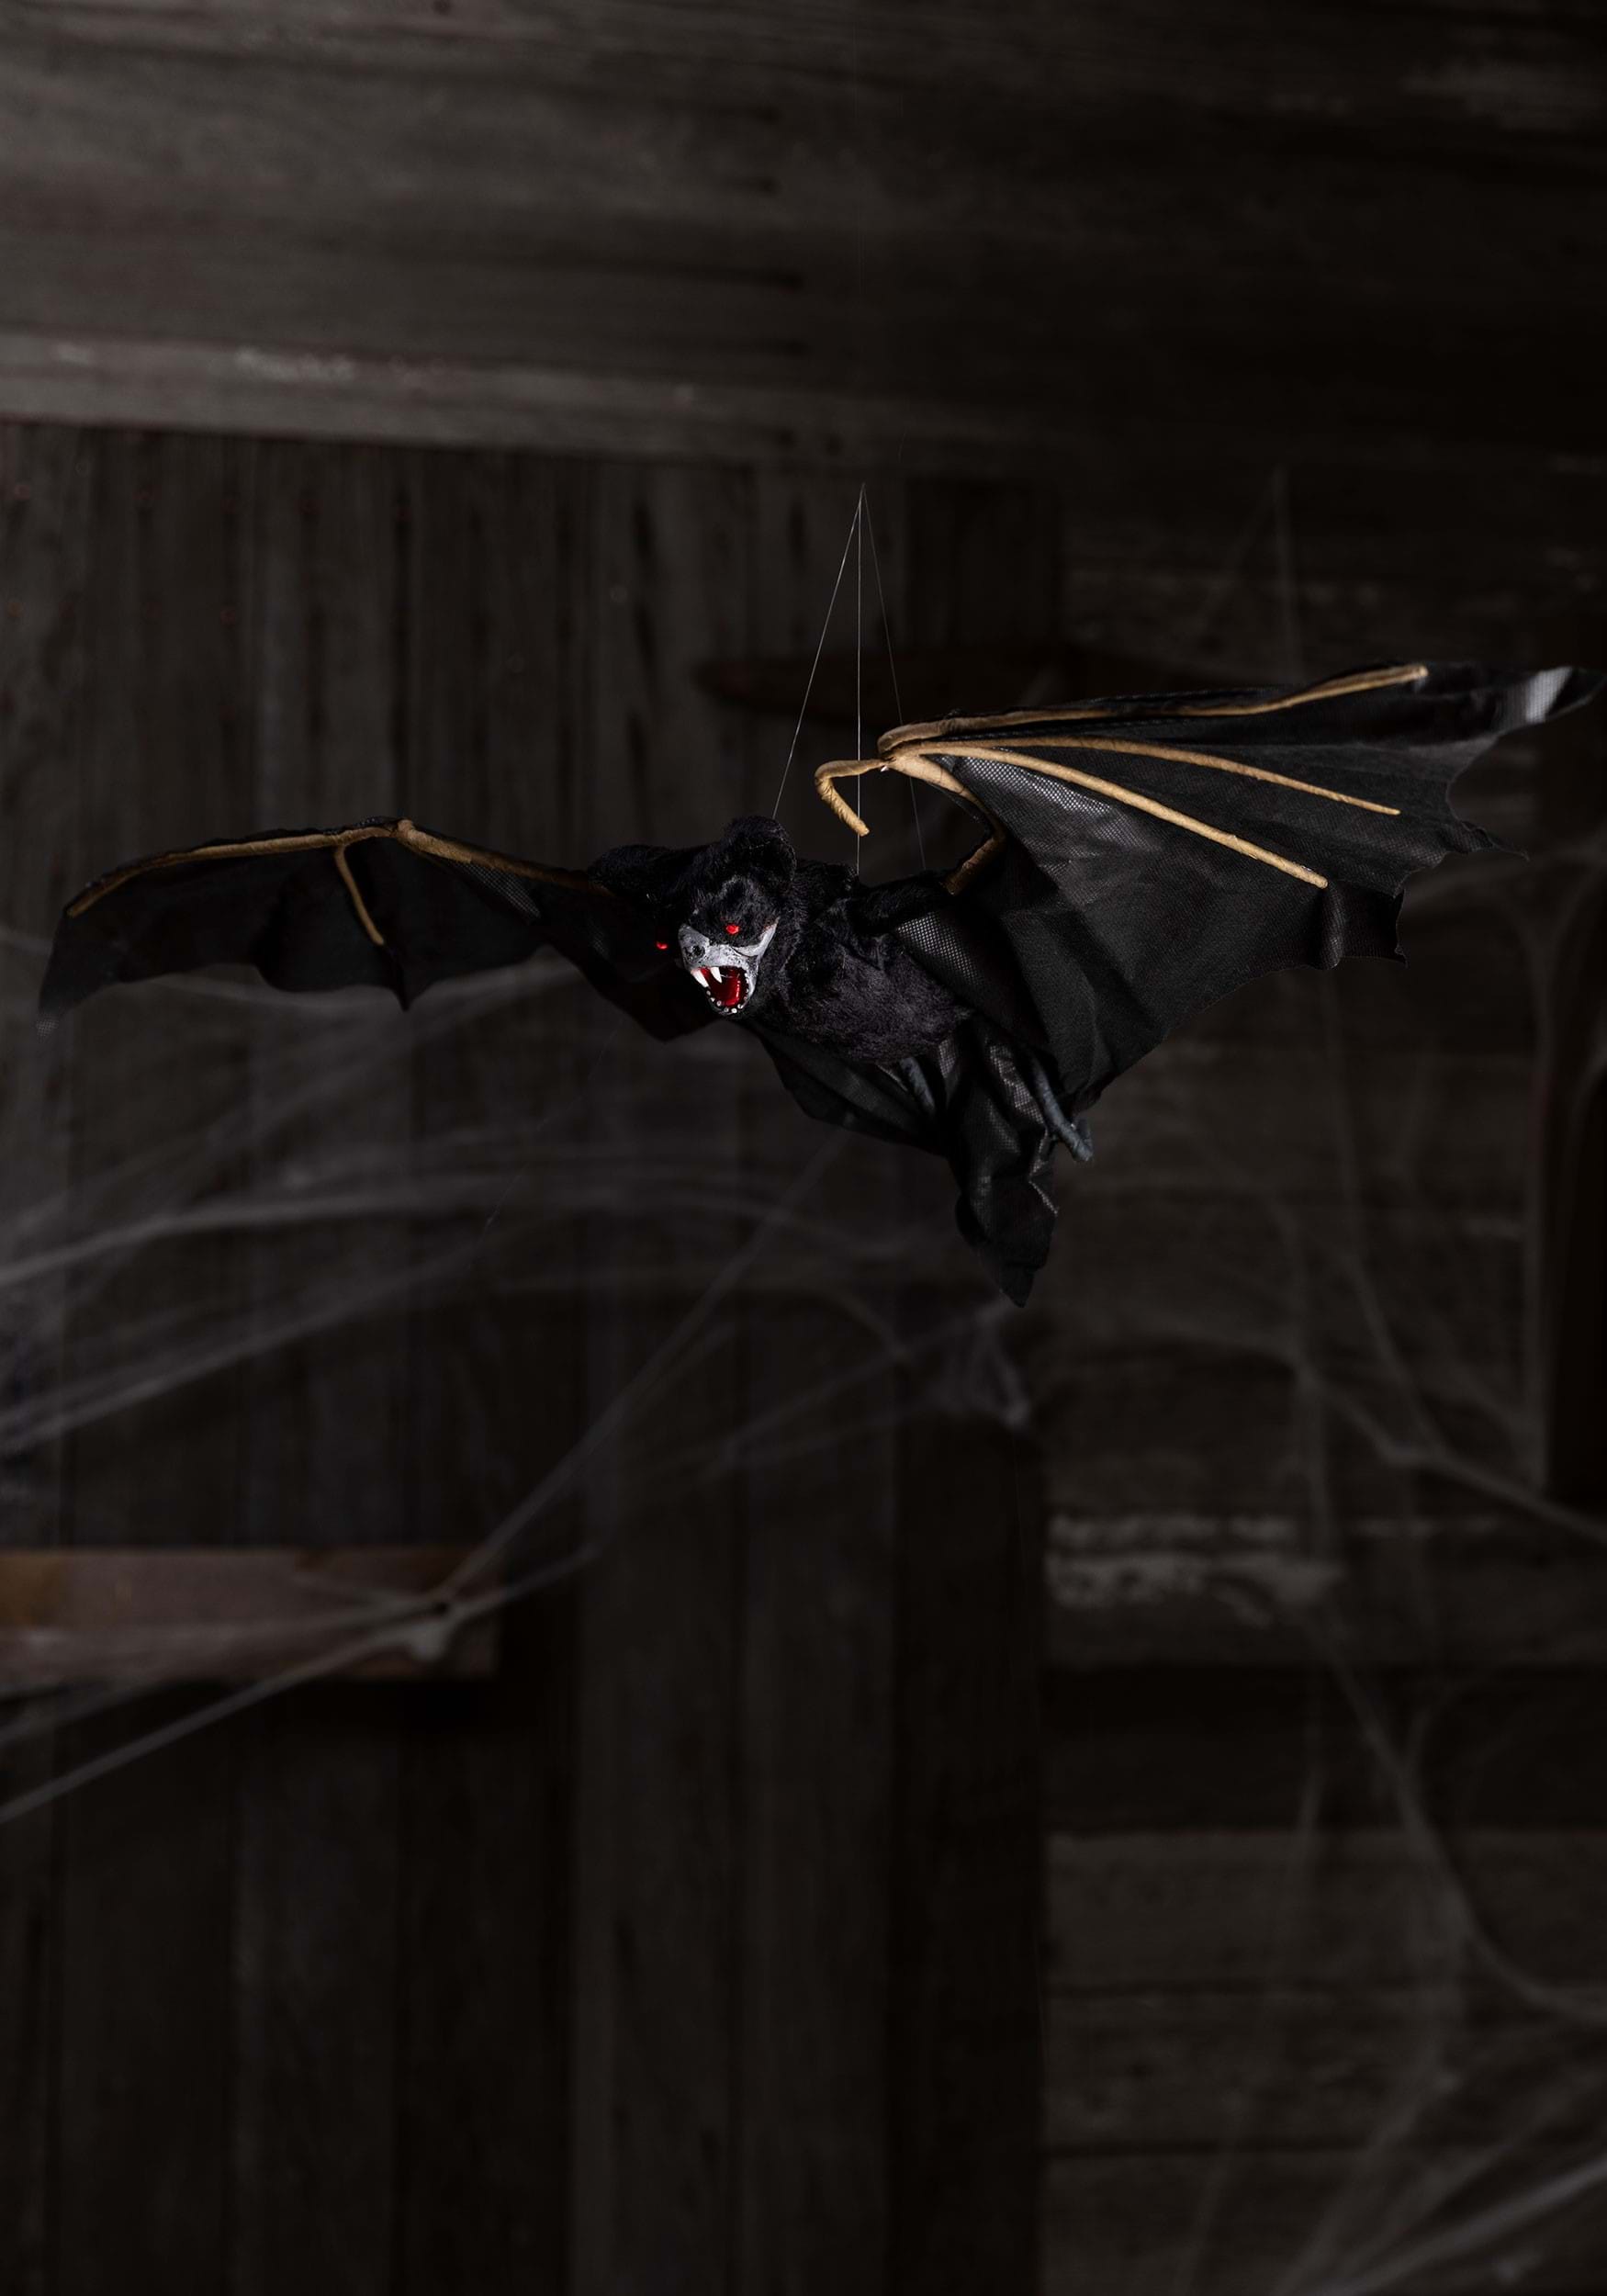 animated bat